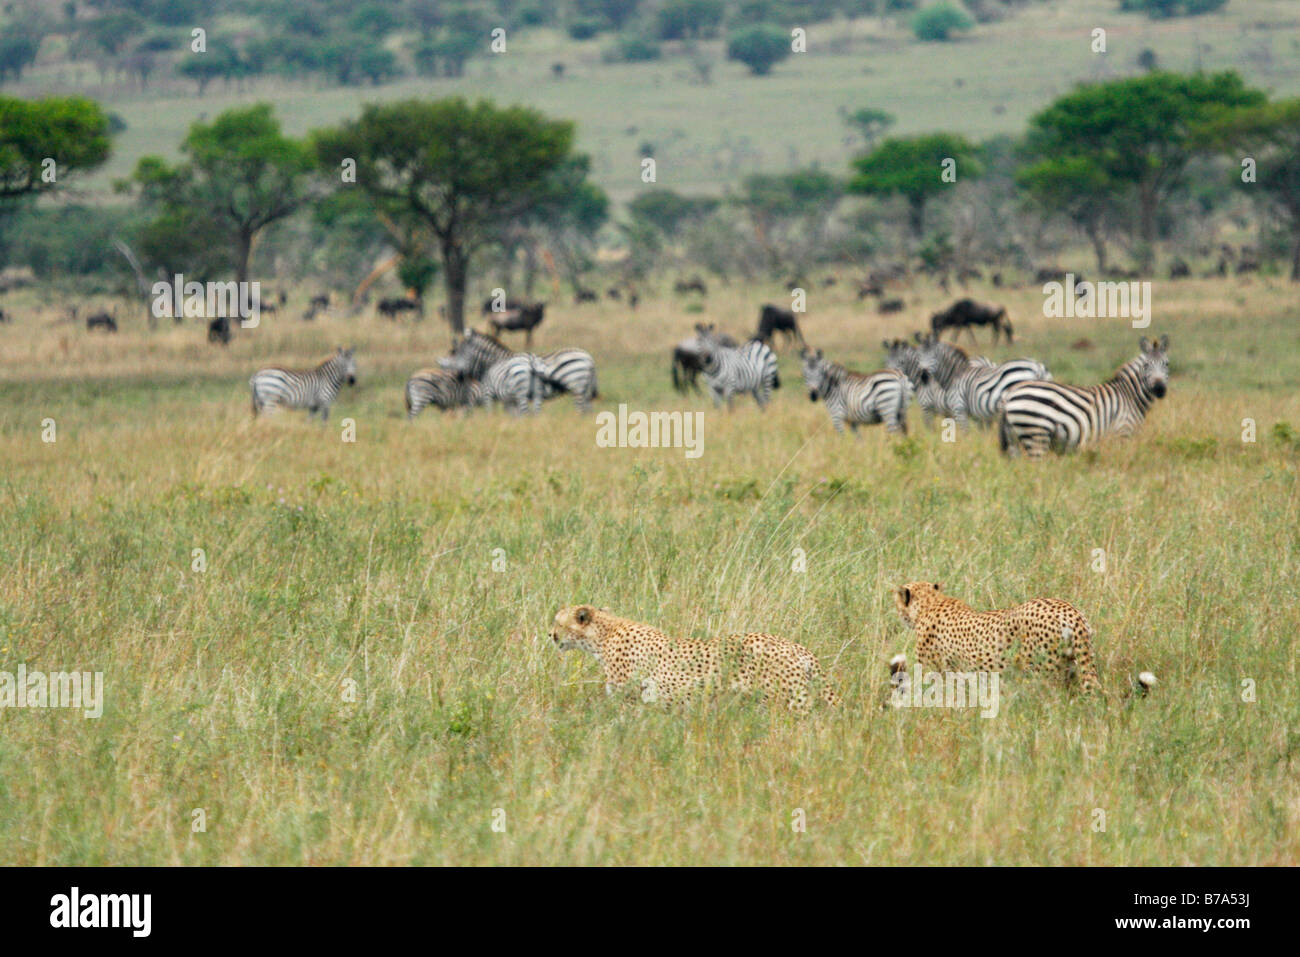 Paar von Geparden Spaziergang durch lange Grashalme beobachten, grasende Zebras, mit Herden von Gnus im Hintergrund Stockfoto